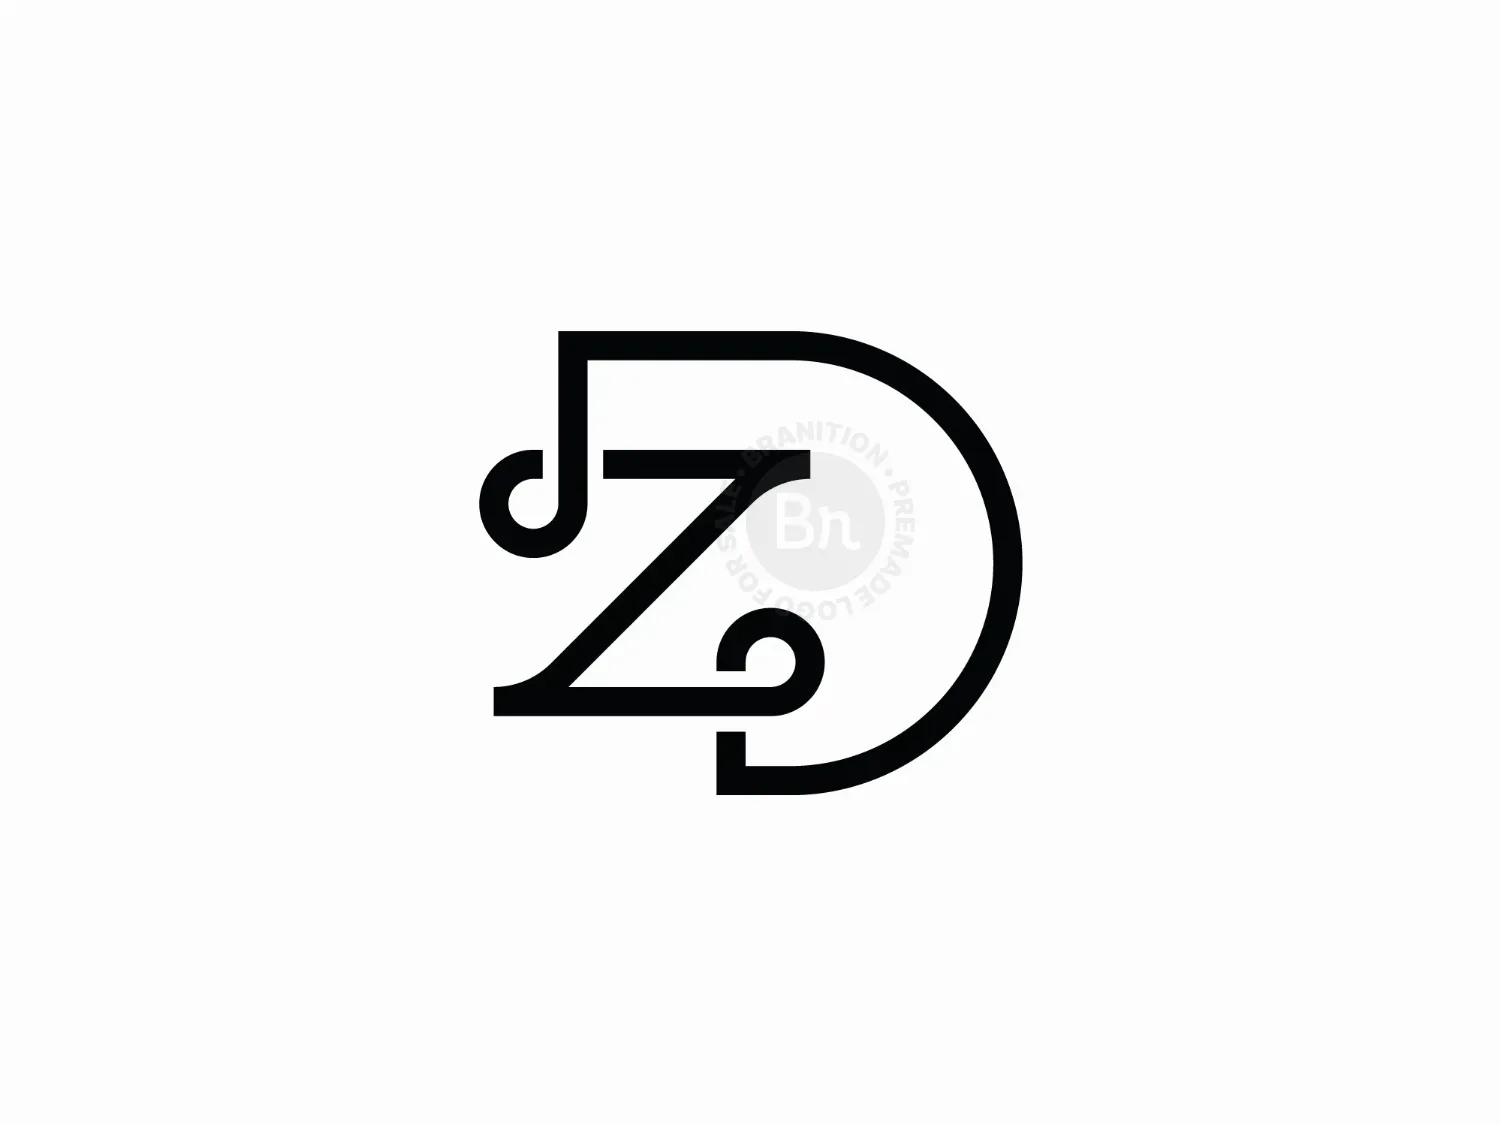 Modern Letter D And Z Logo